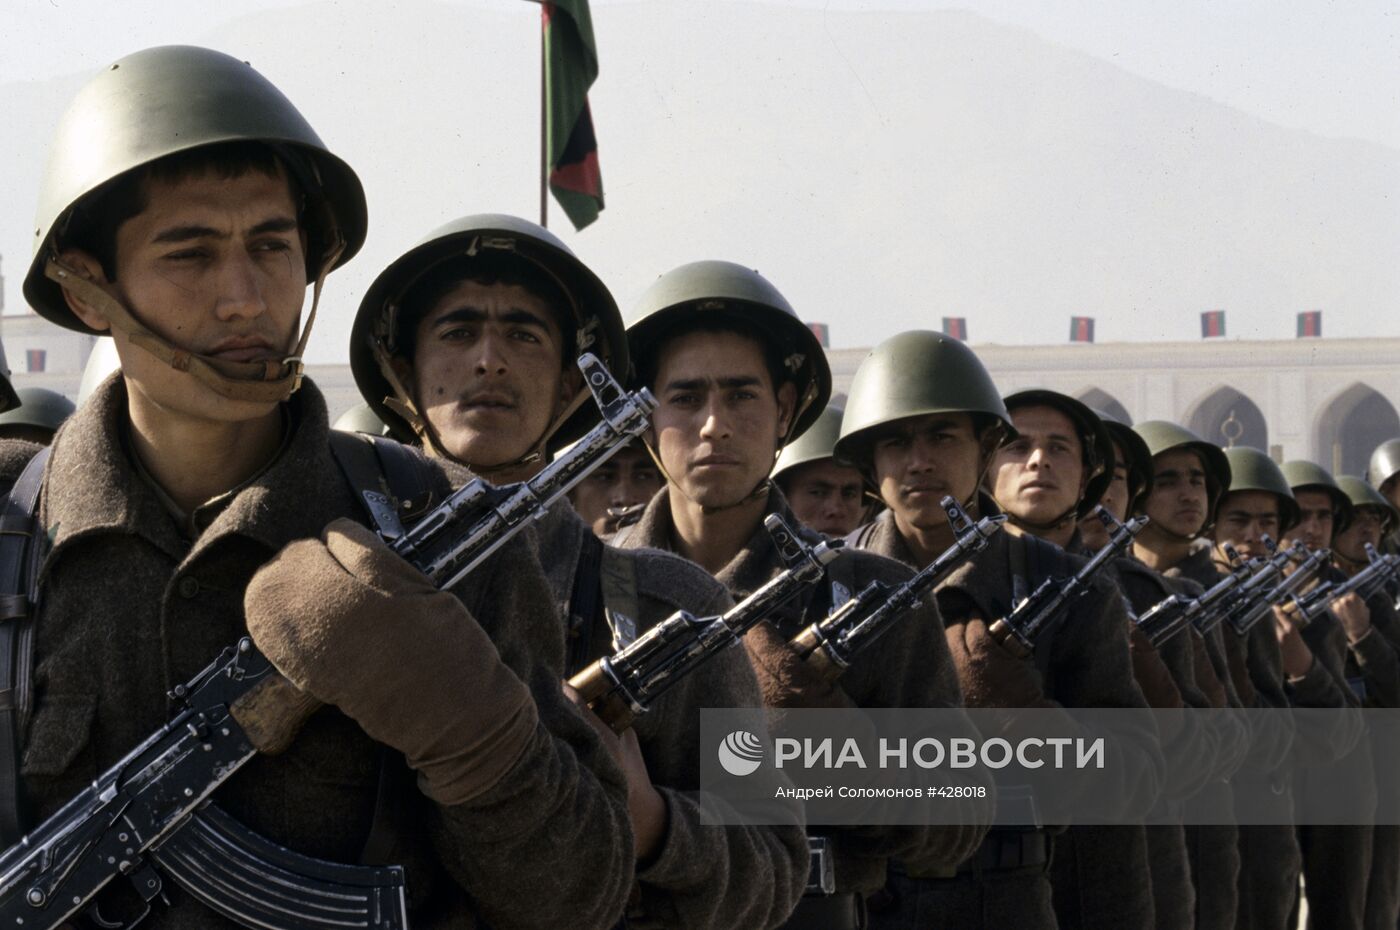 Сандинистская народная армия. Афганская народная армия. Сарбозы Афганистан. Армия народной Республики Афганистан.